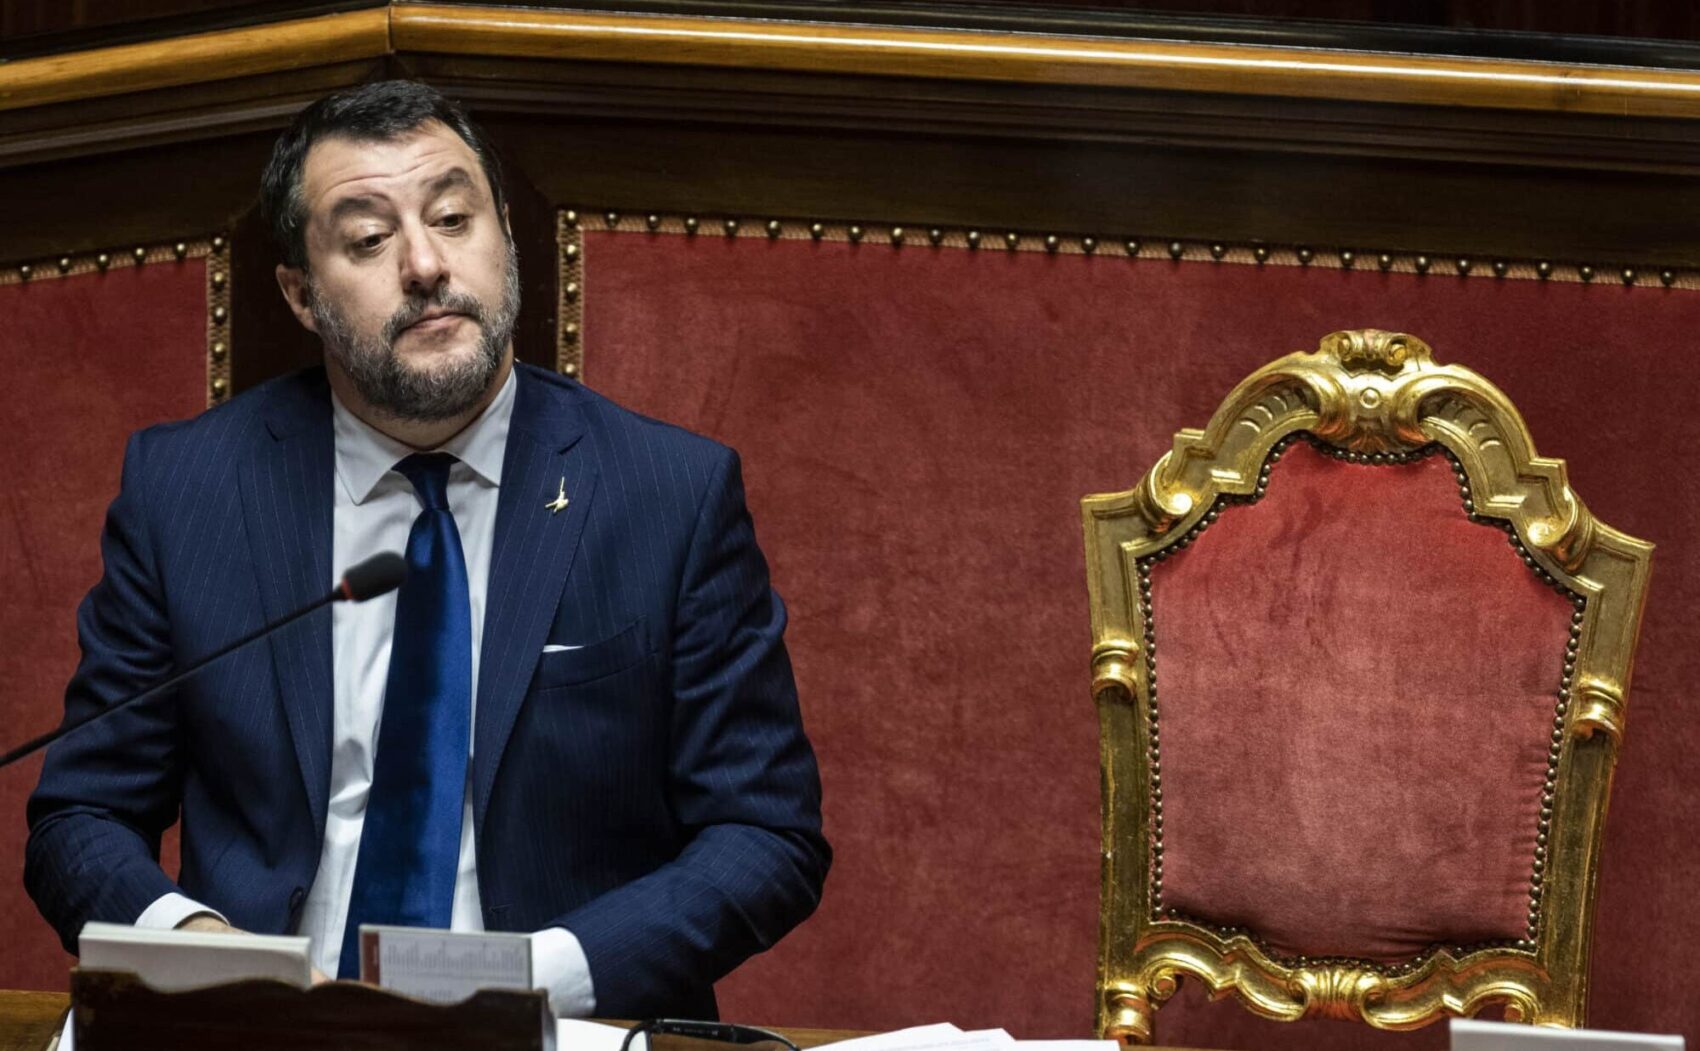 Autonomia, per Salvini non è differenziata: “È migliorativa”